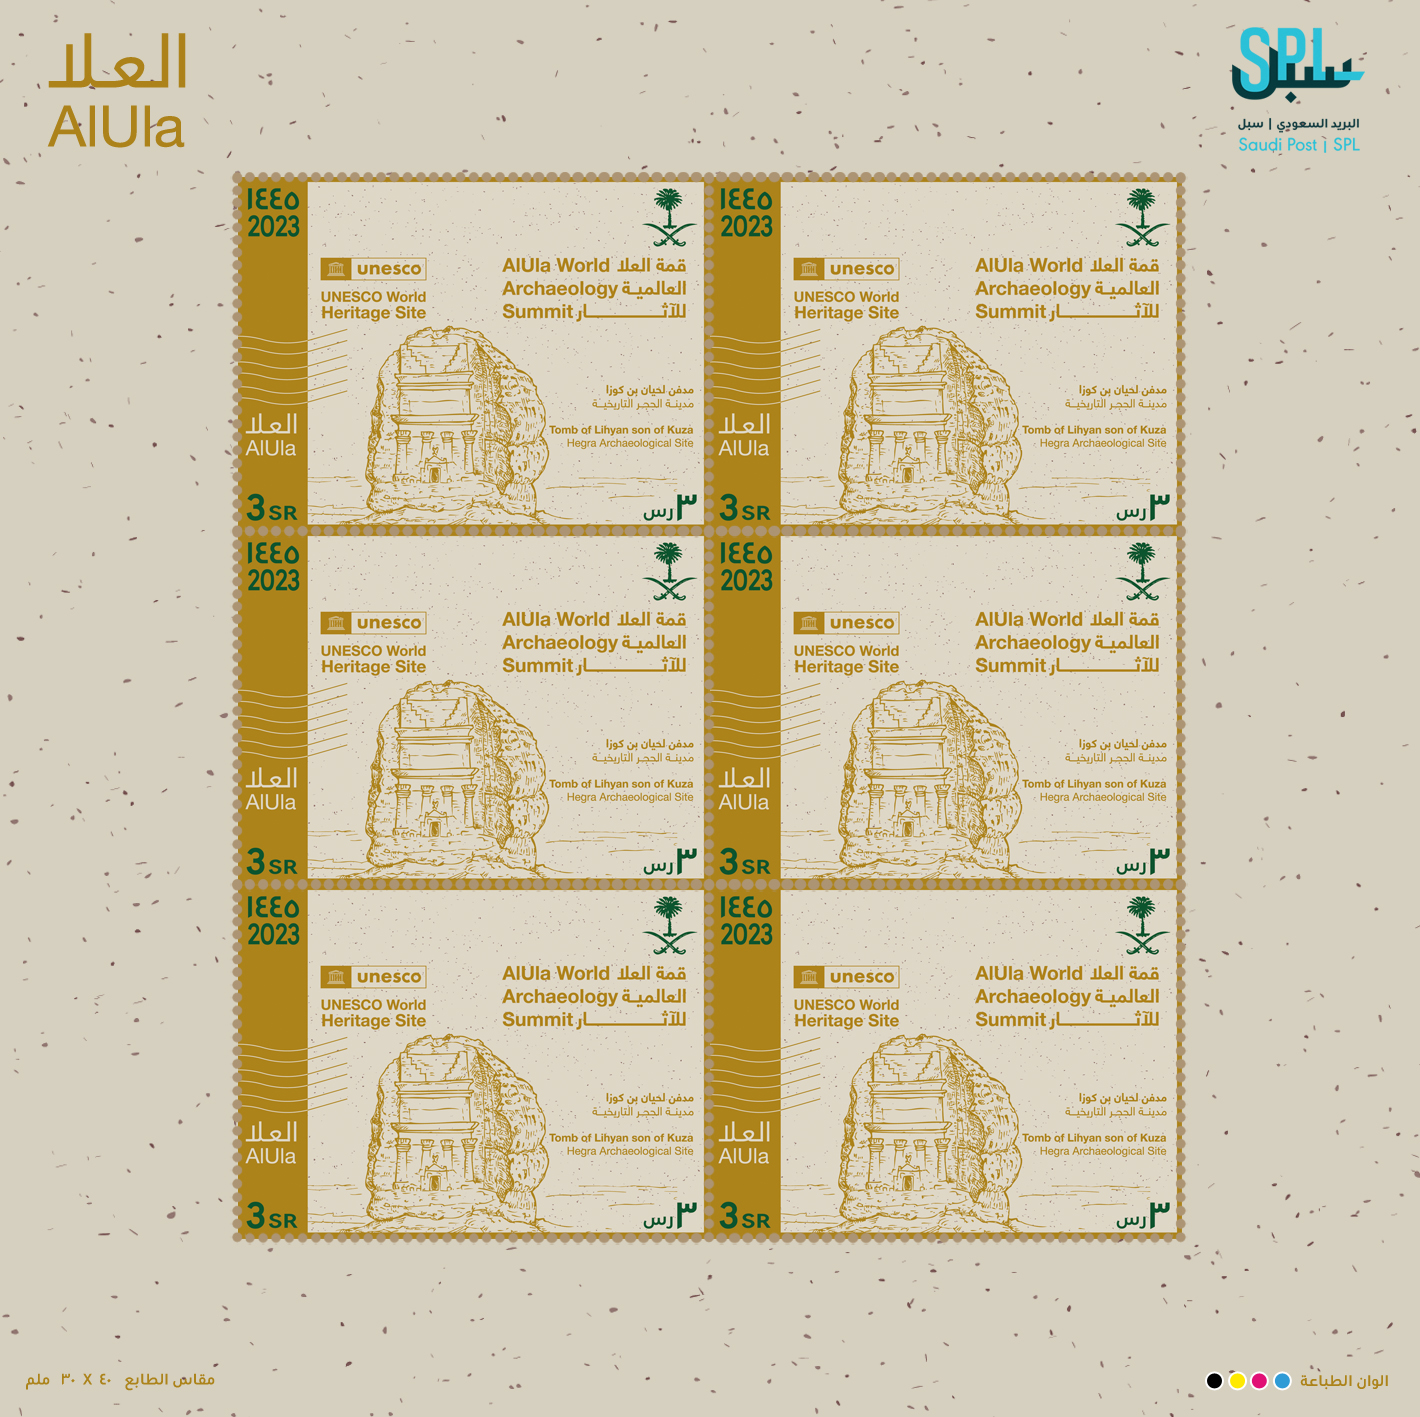 البريد السعودي |سبل يصدر طابعًا تذكاريًا بمناسبة استضافة المملكة العربية السعودية قمة العلا العالمية للآثار عام1445هـ - 2023م